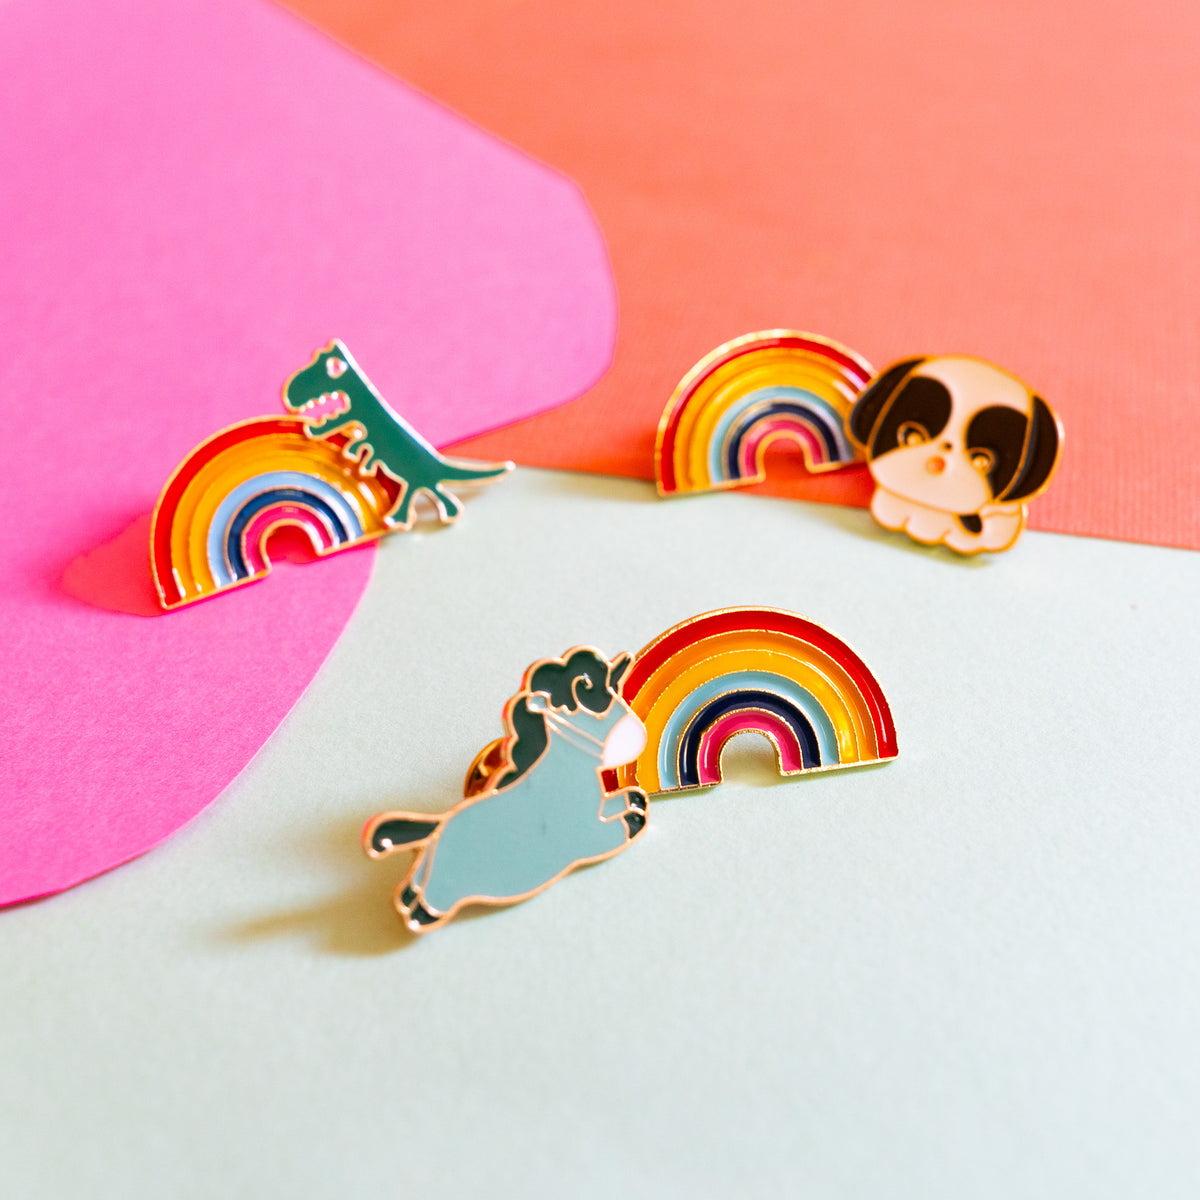 Rainbows And Cuddles Pins